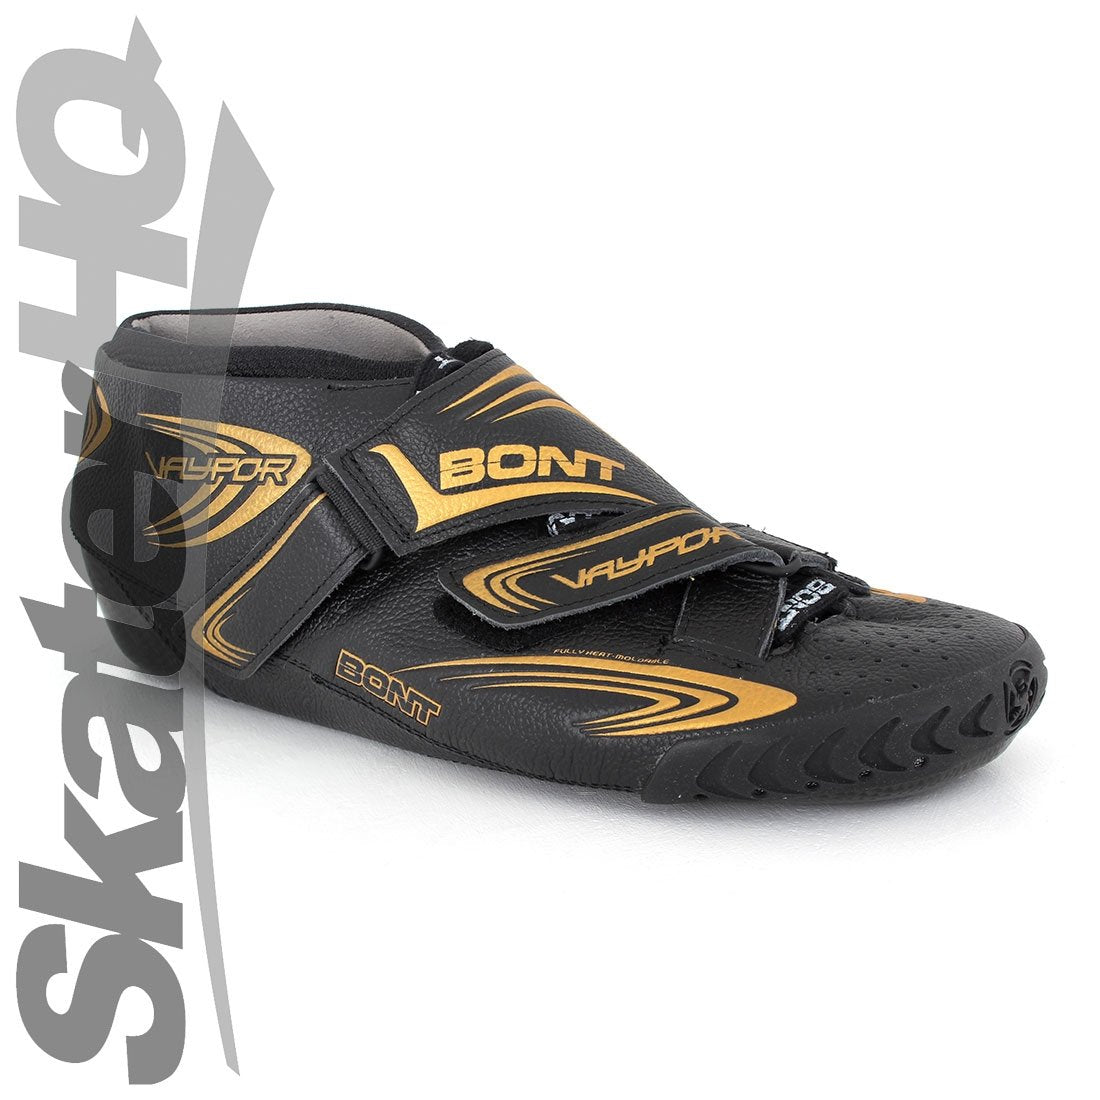 Bont Vaypor Carbon Leather Boot Black/Gold - 4US EU36 23.6cm Roller Skate Boots